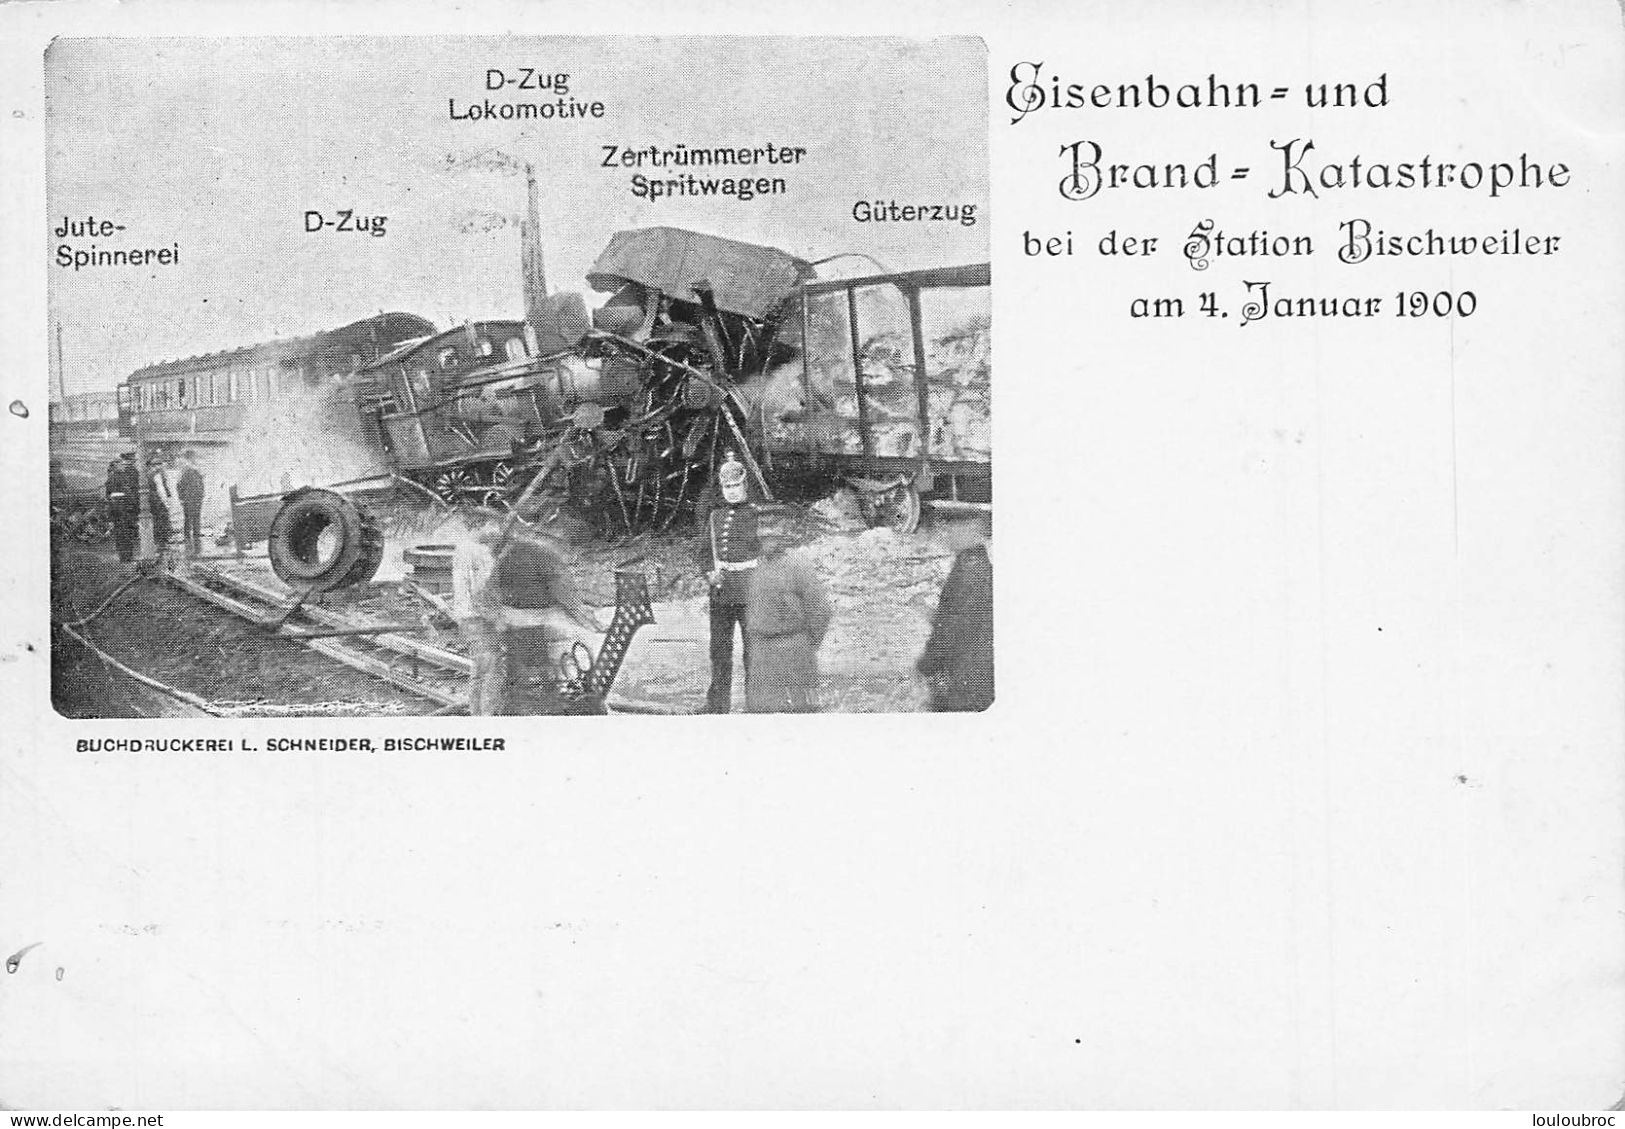 BISCHWILLER BISCHWEILER CATASTROPHE FERROVIAIRE EN GARE DU 04 JANVIER 1900 BRAND KATASTROPHE R3 - Bischwiller